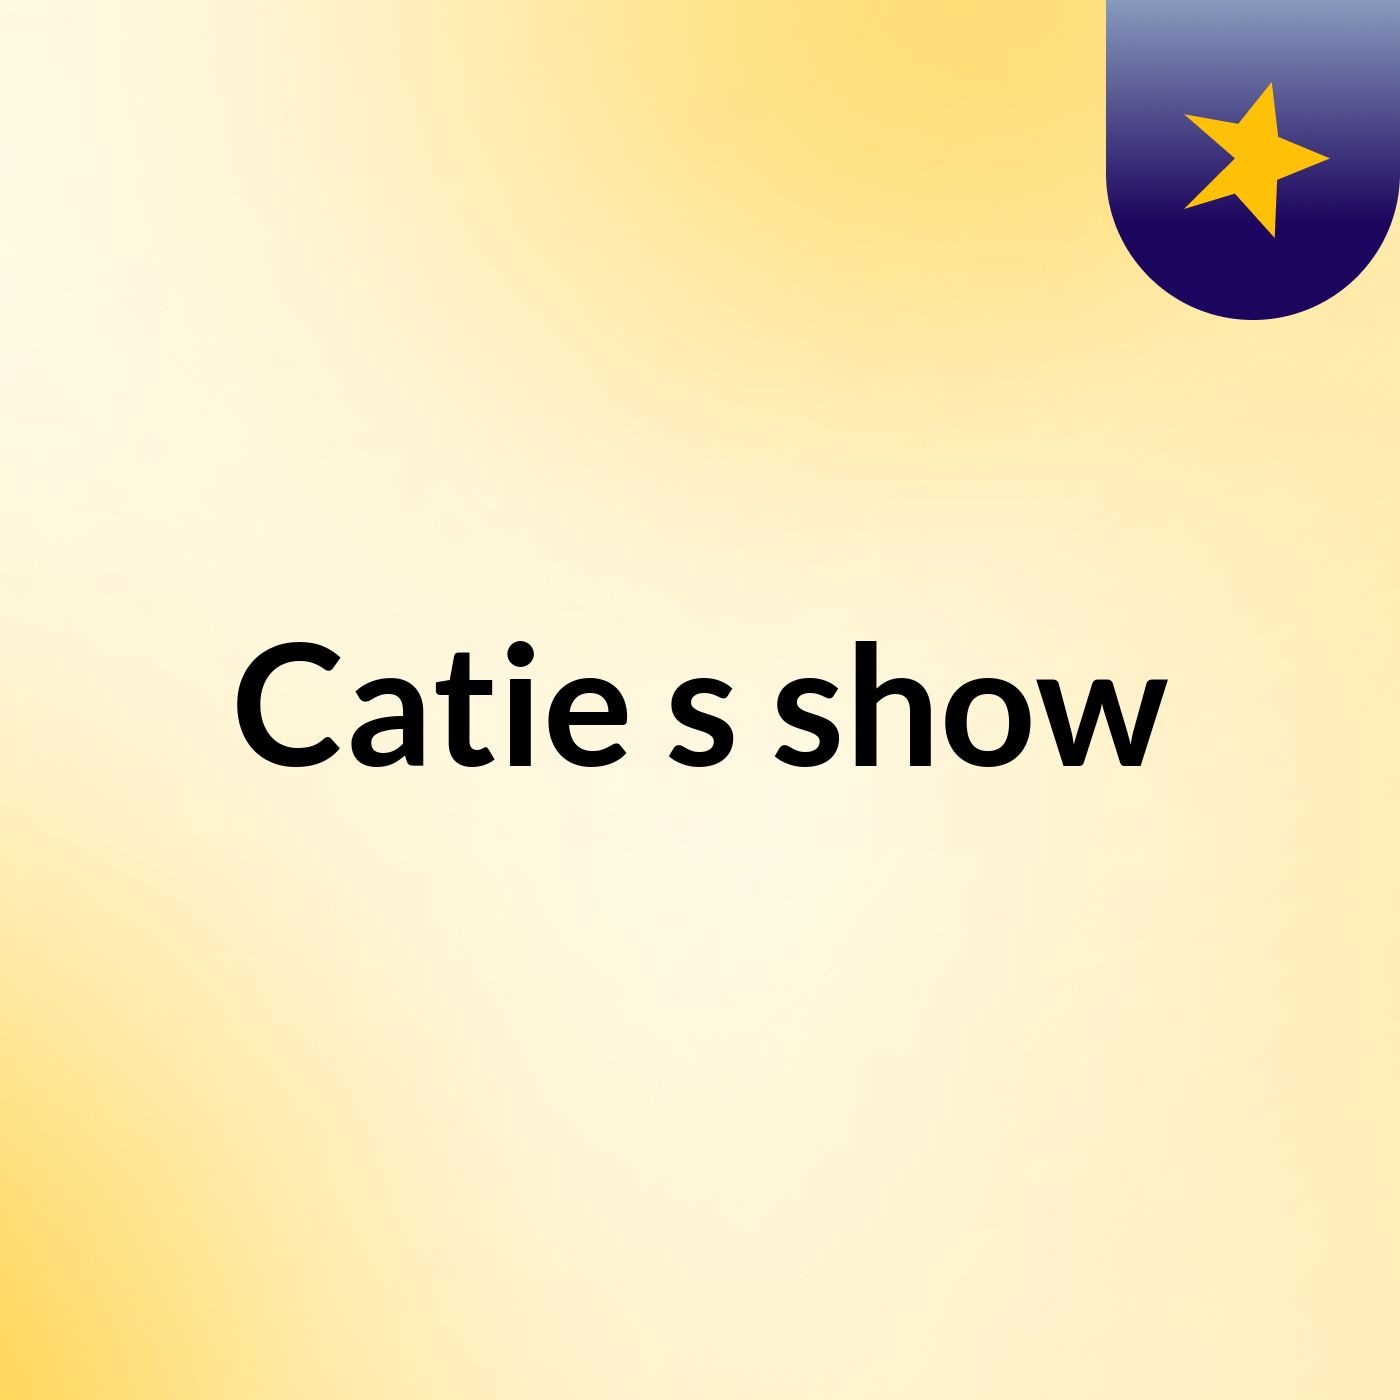 Catie's show